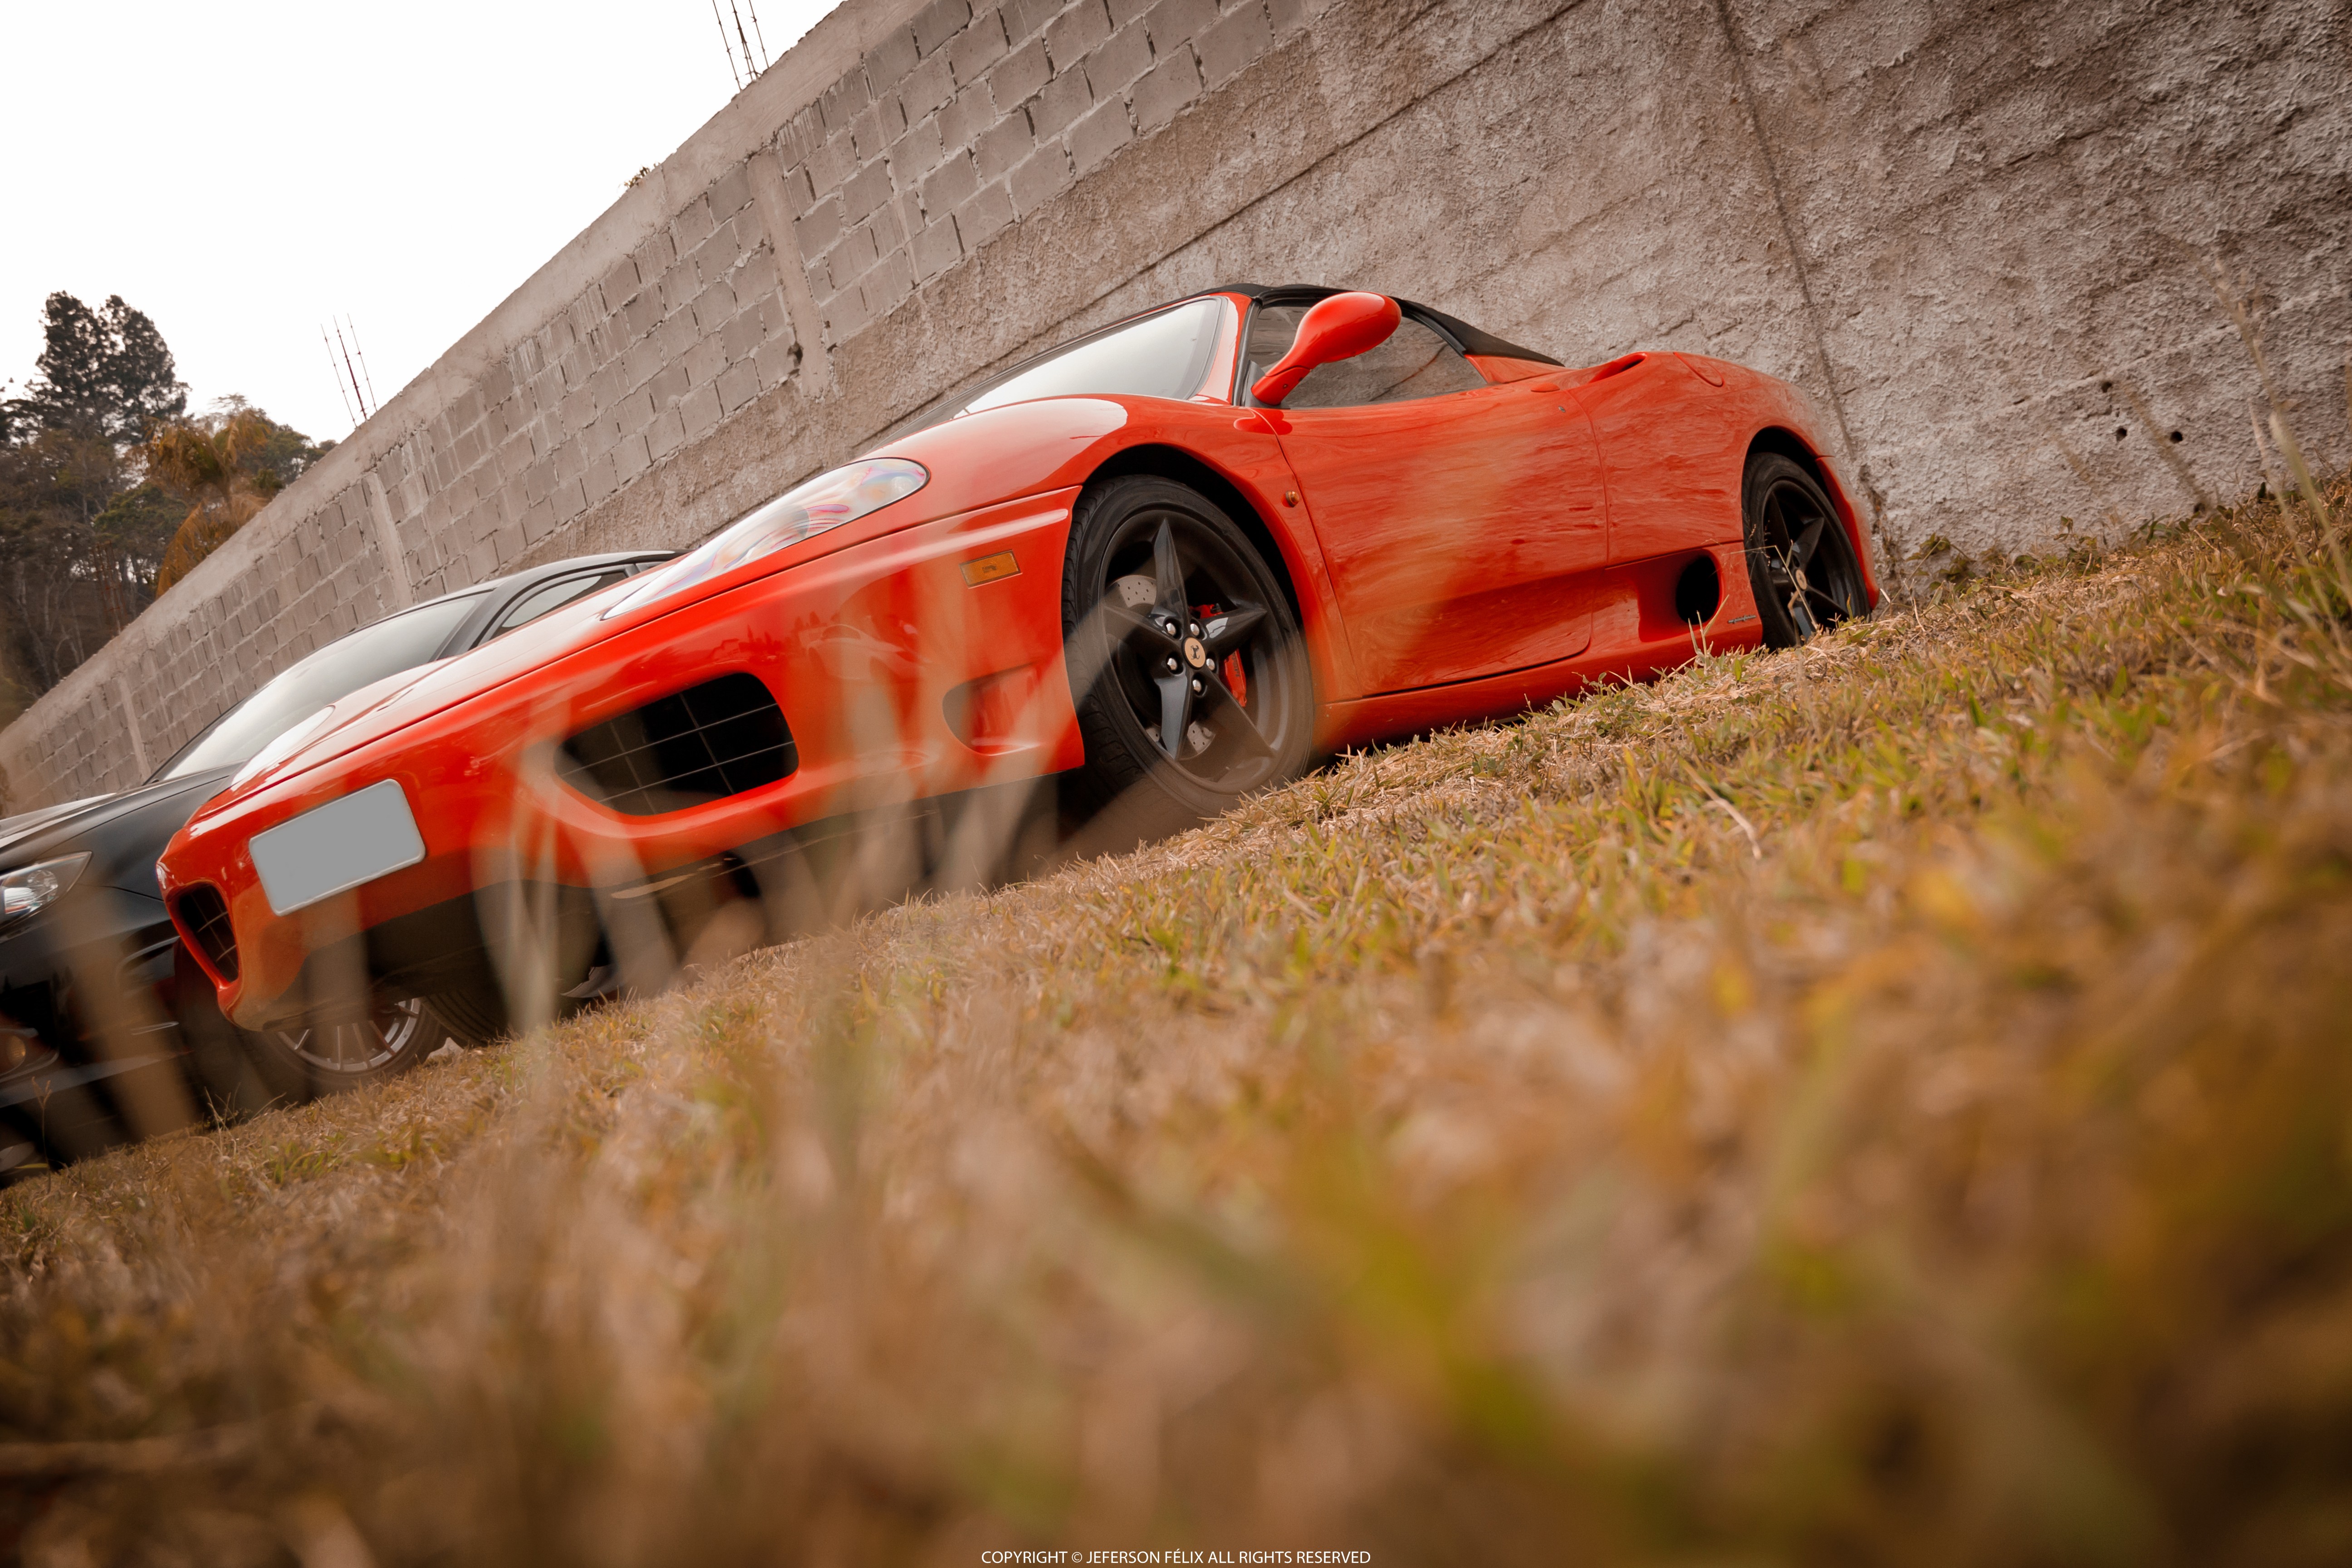 Ferrari Ferrari 360 Car Supercars Worms Eye View 5184x3456